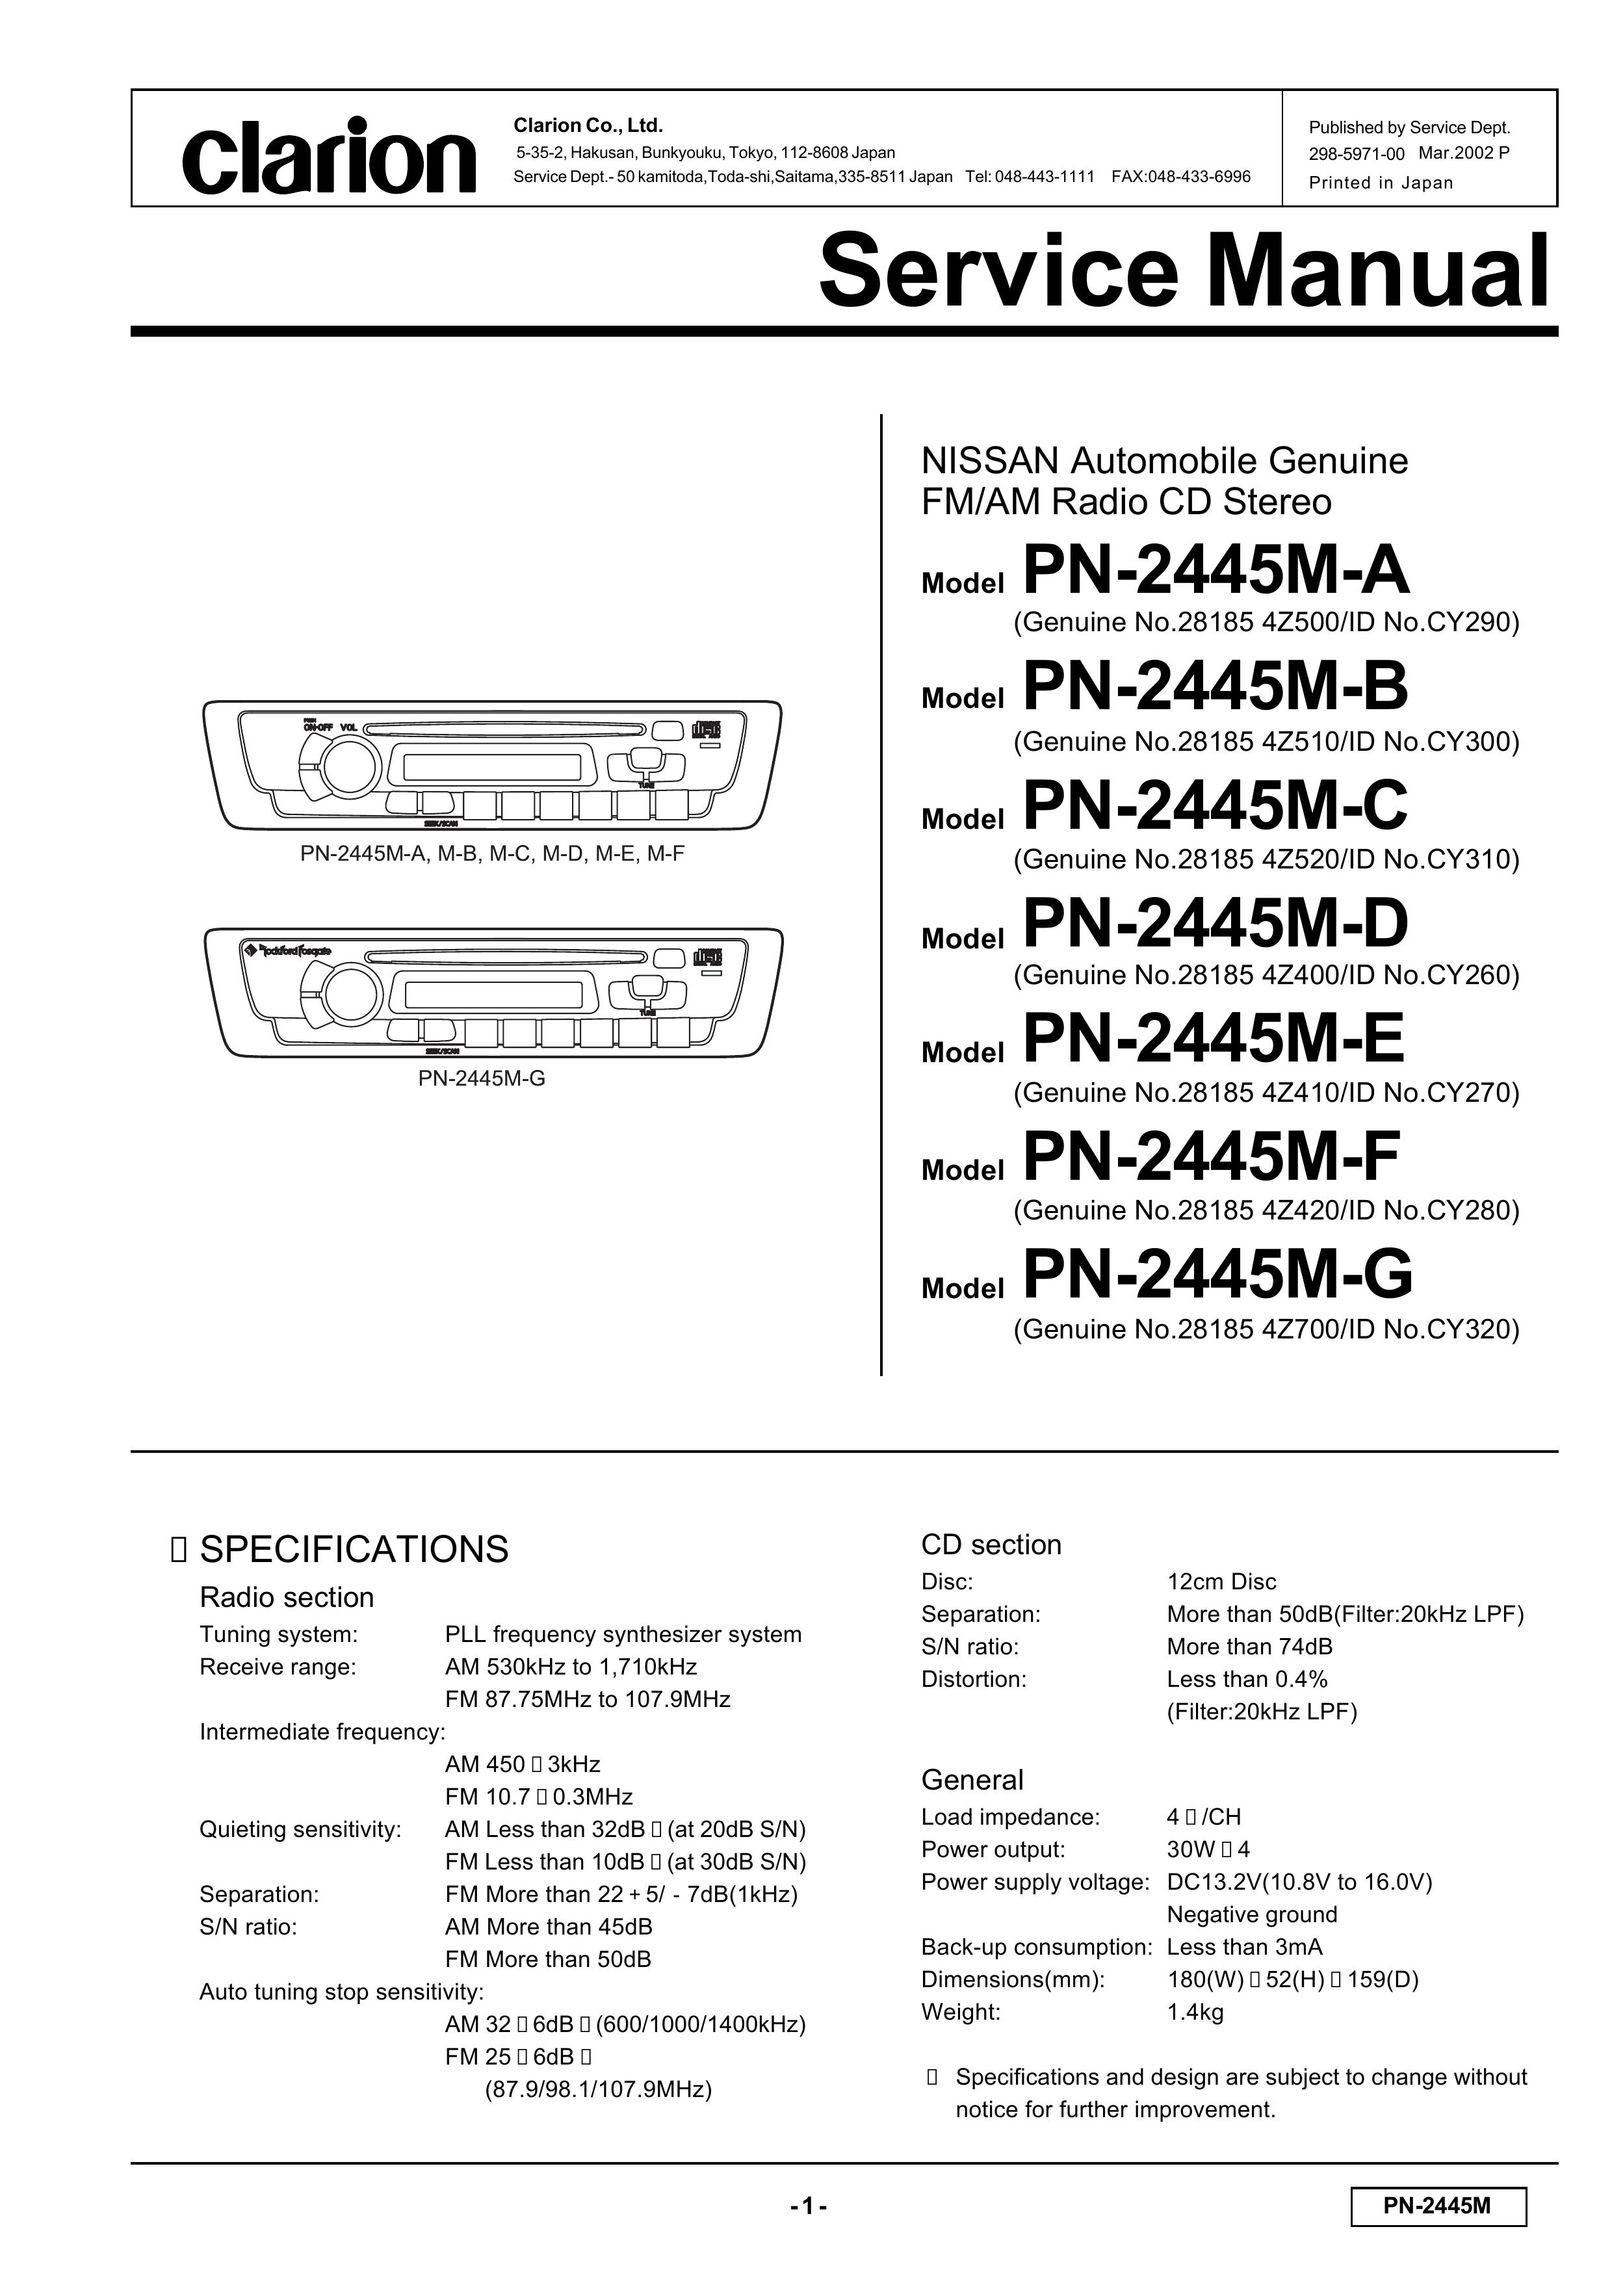 Clarion PN-2445M-C Radio User Manual